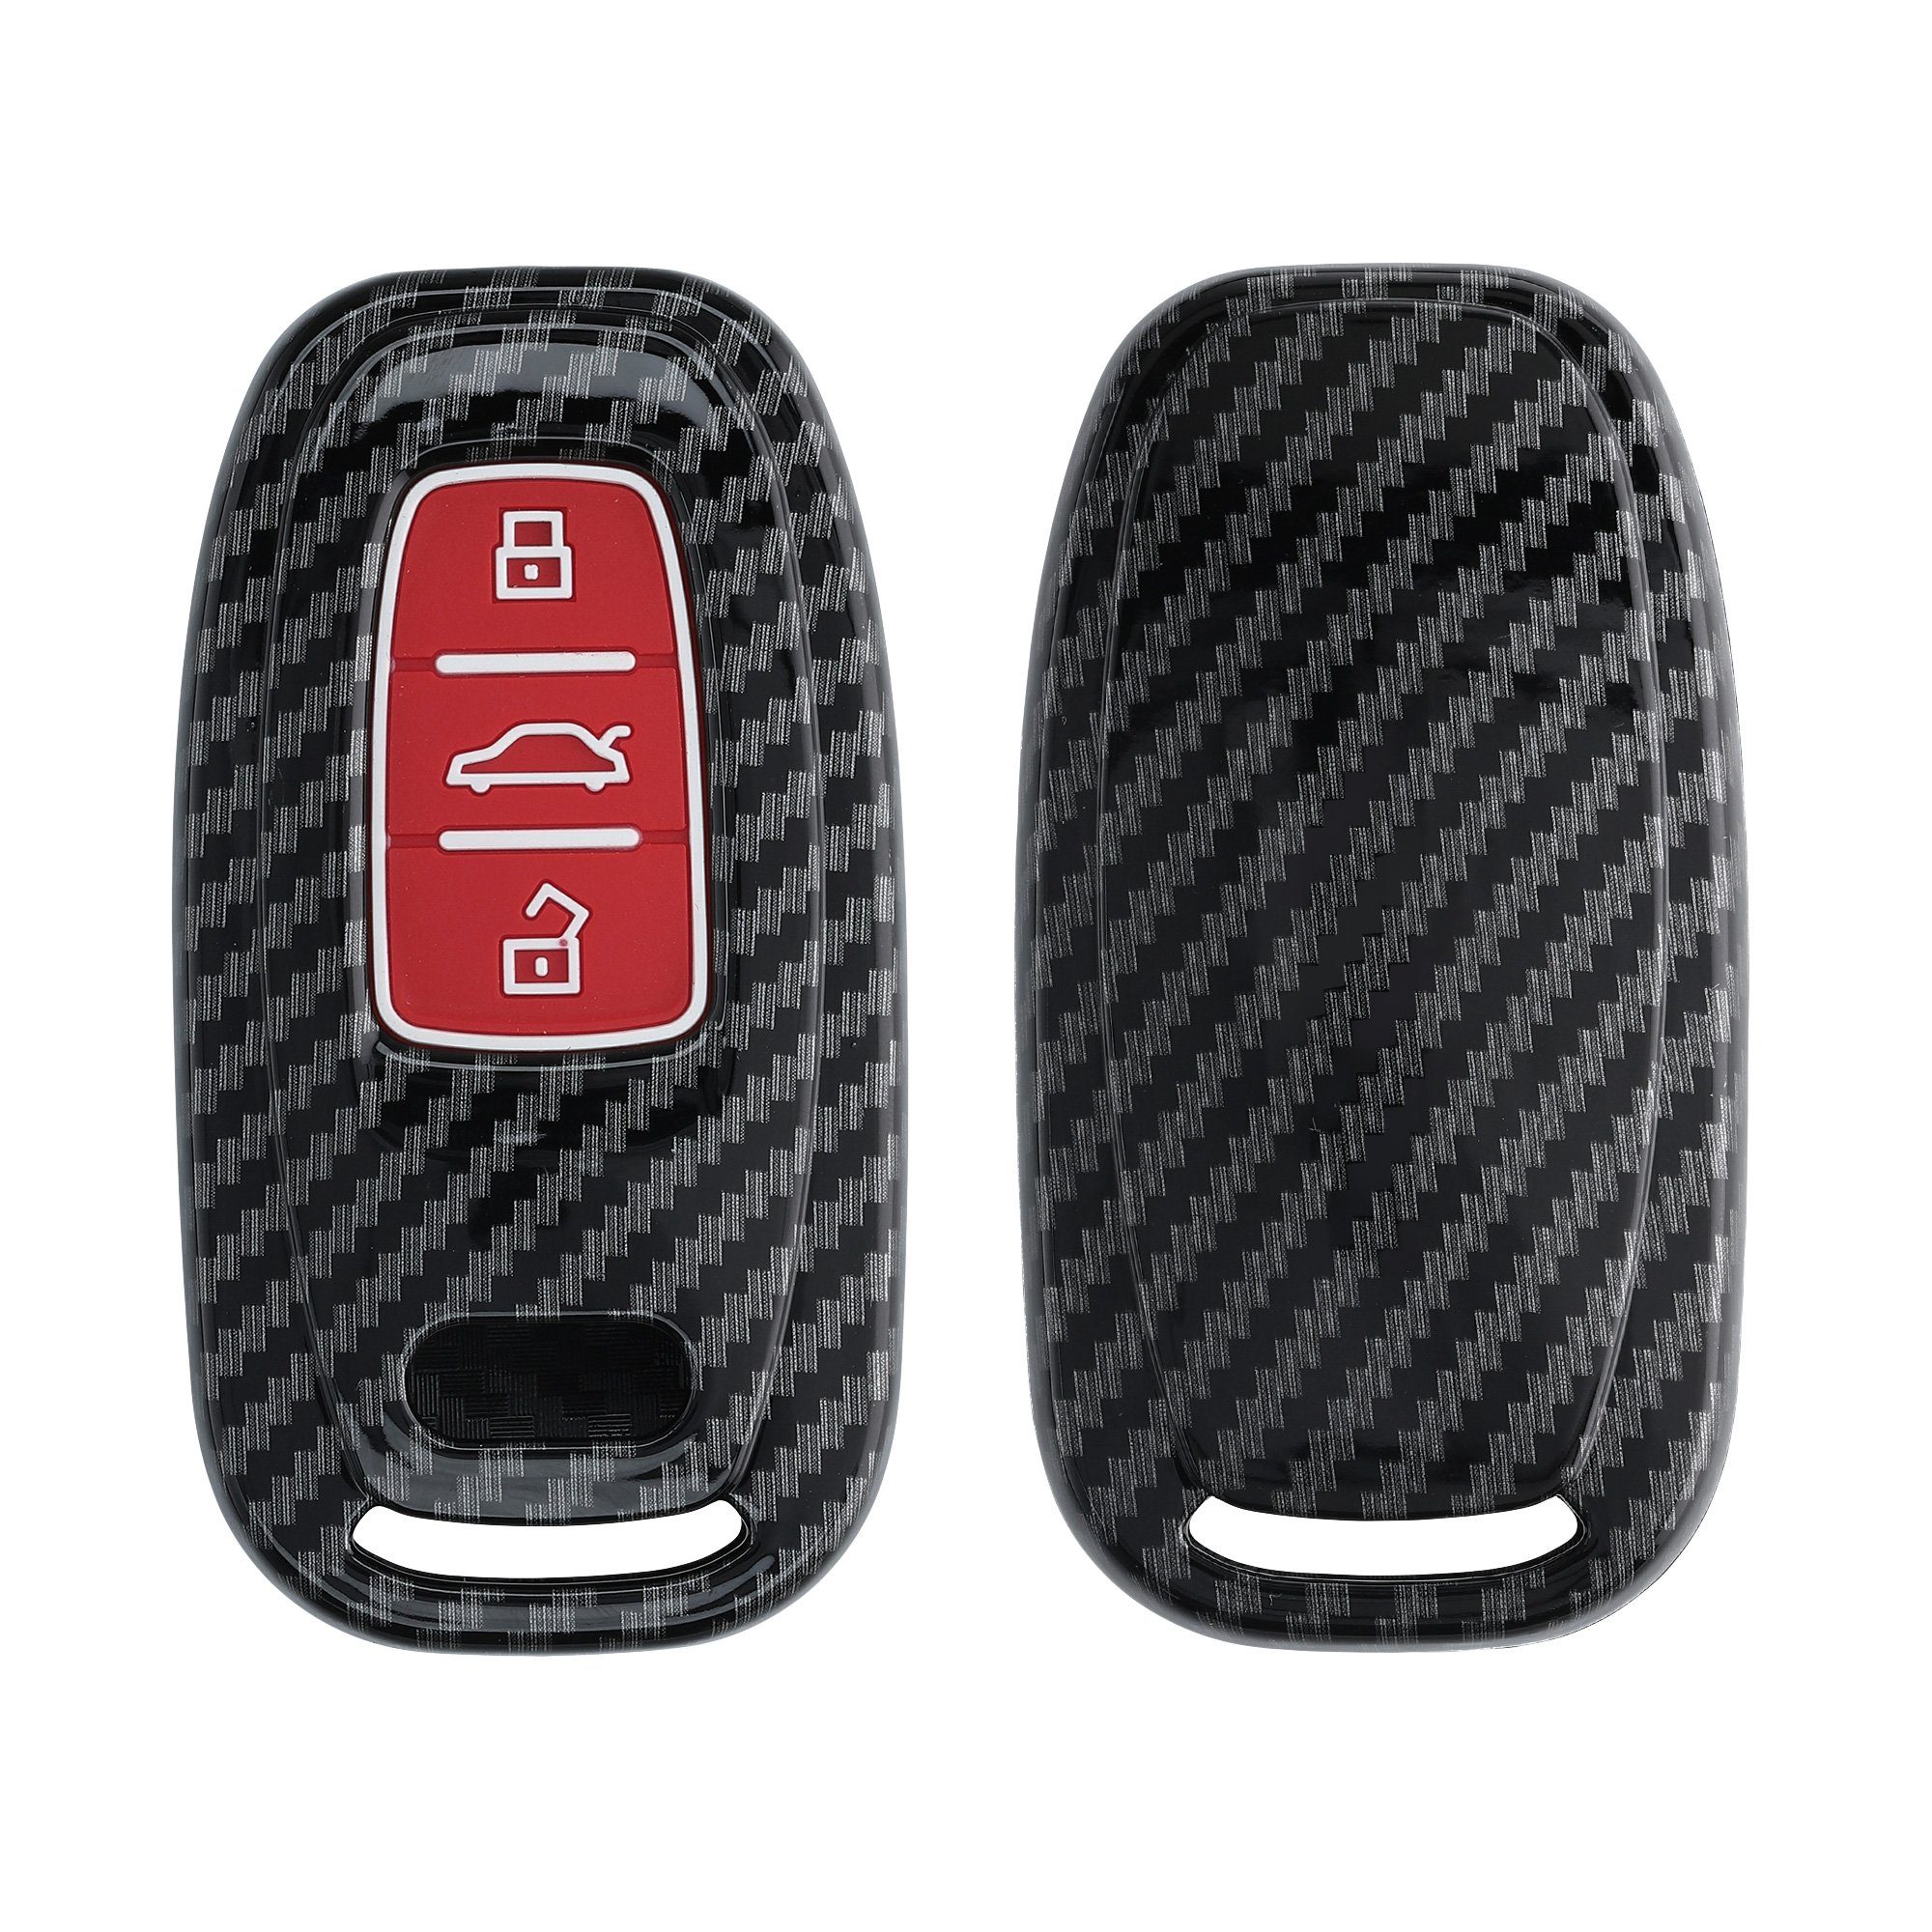 Schlüsseltasche Hülle Audi Autoschlüssel Keyless, - Hardcover Cover Case Schlüsselhülle 3-Tasten Schutzhülle kwmobile für Autoschlüssel